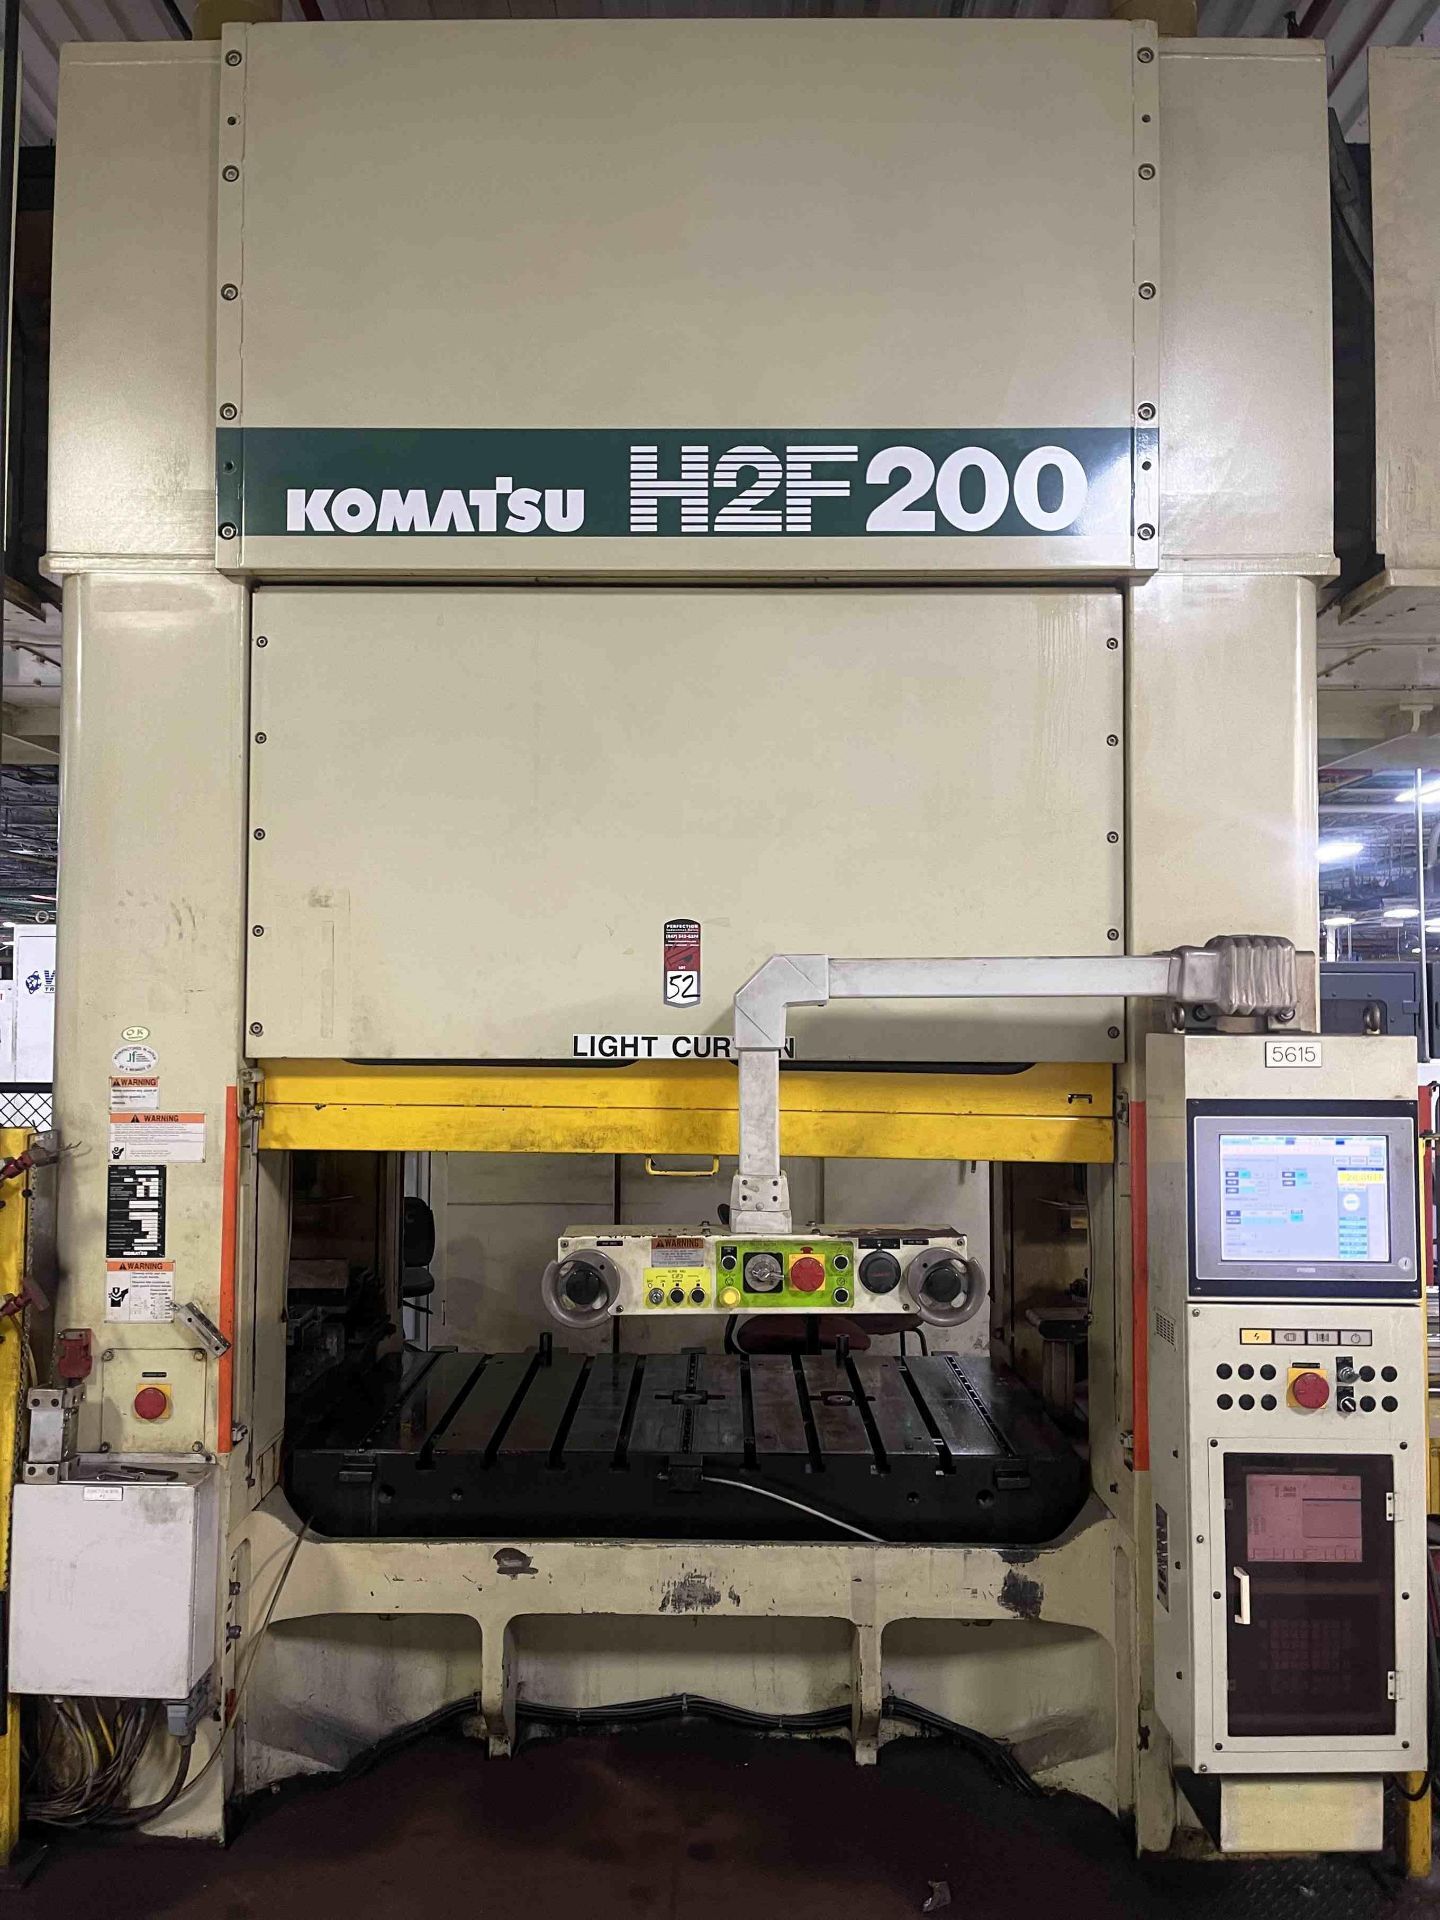 2003 KOMATSU H2F200 Straight Side Mechanical Stamping Presses | Rygate LLC